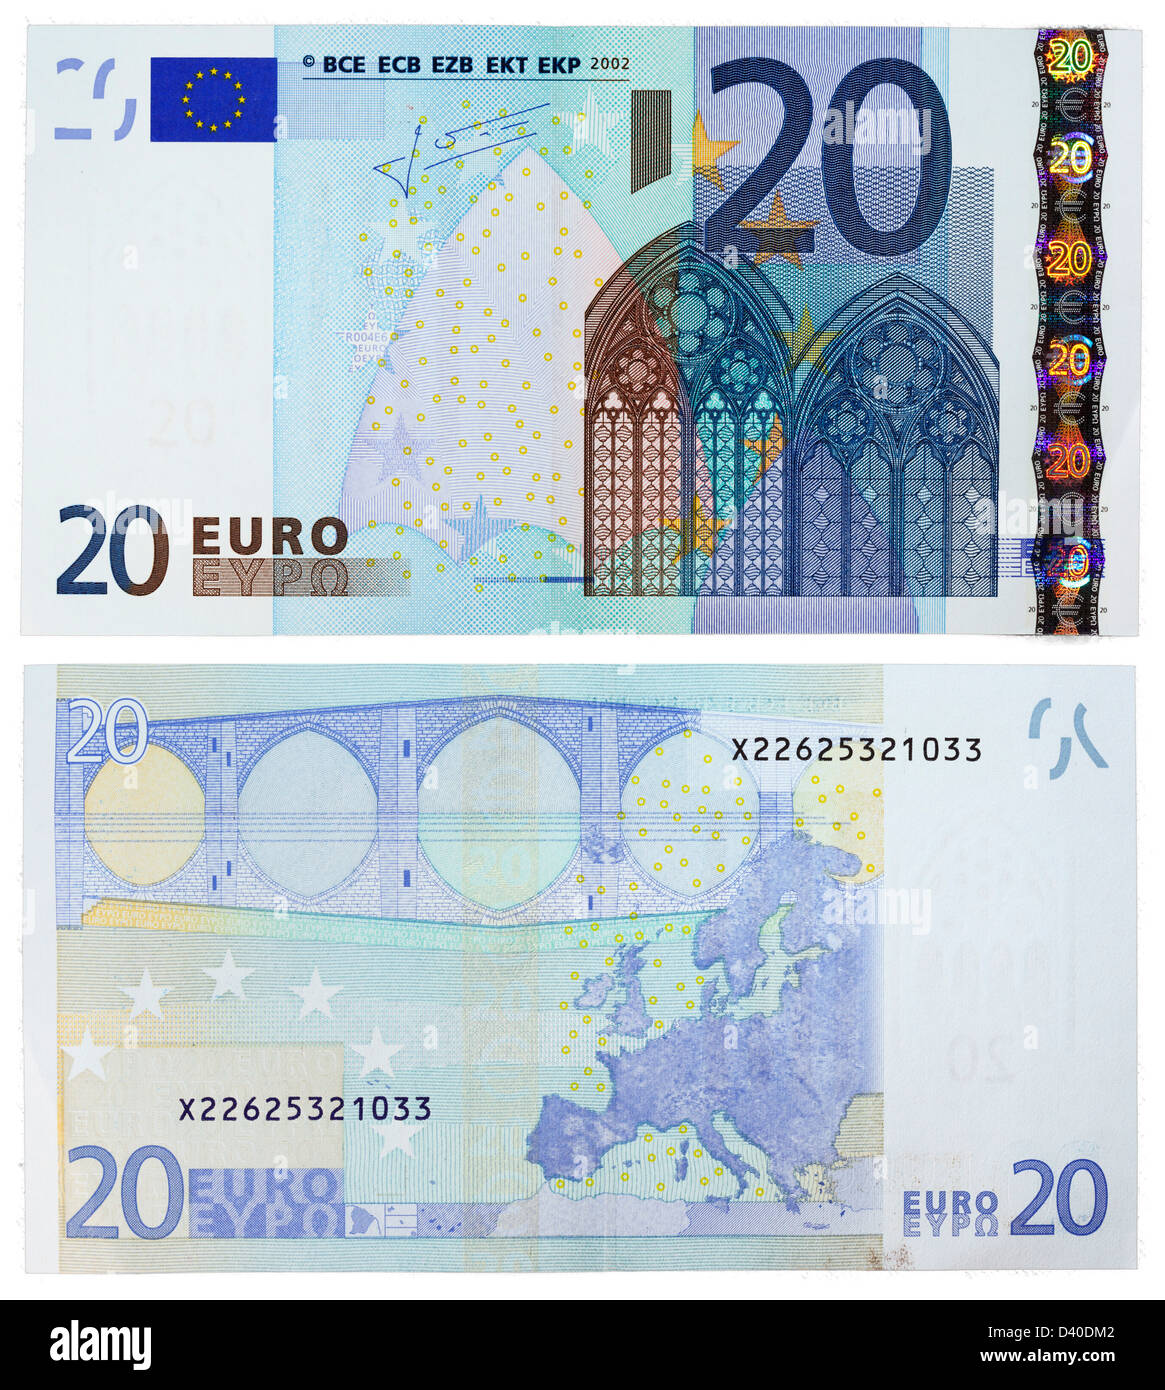 https://c8.alamy.com/comp/D40DM2/20-euro-banknote-gothic-architecture-and-bridge-2002-D40DM2.jpg